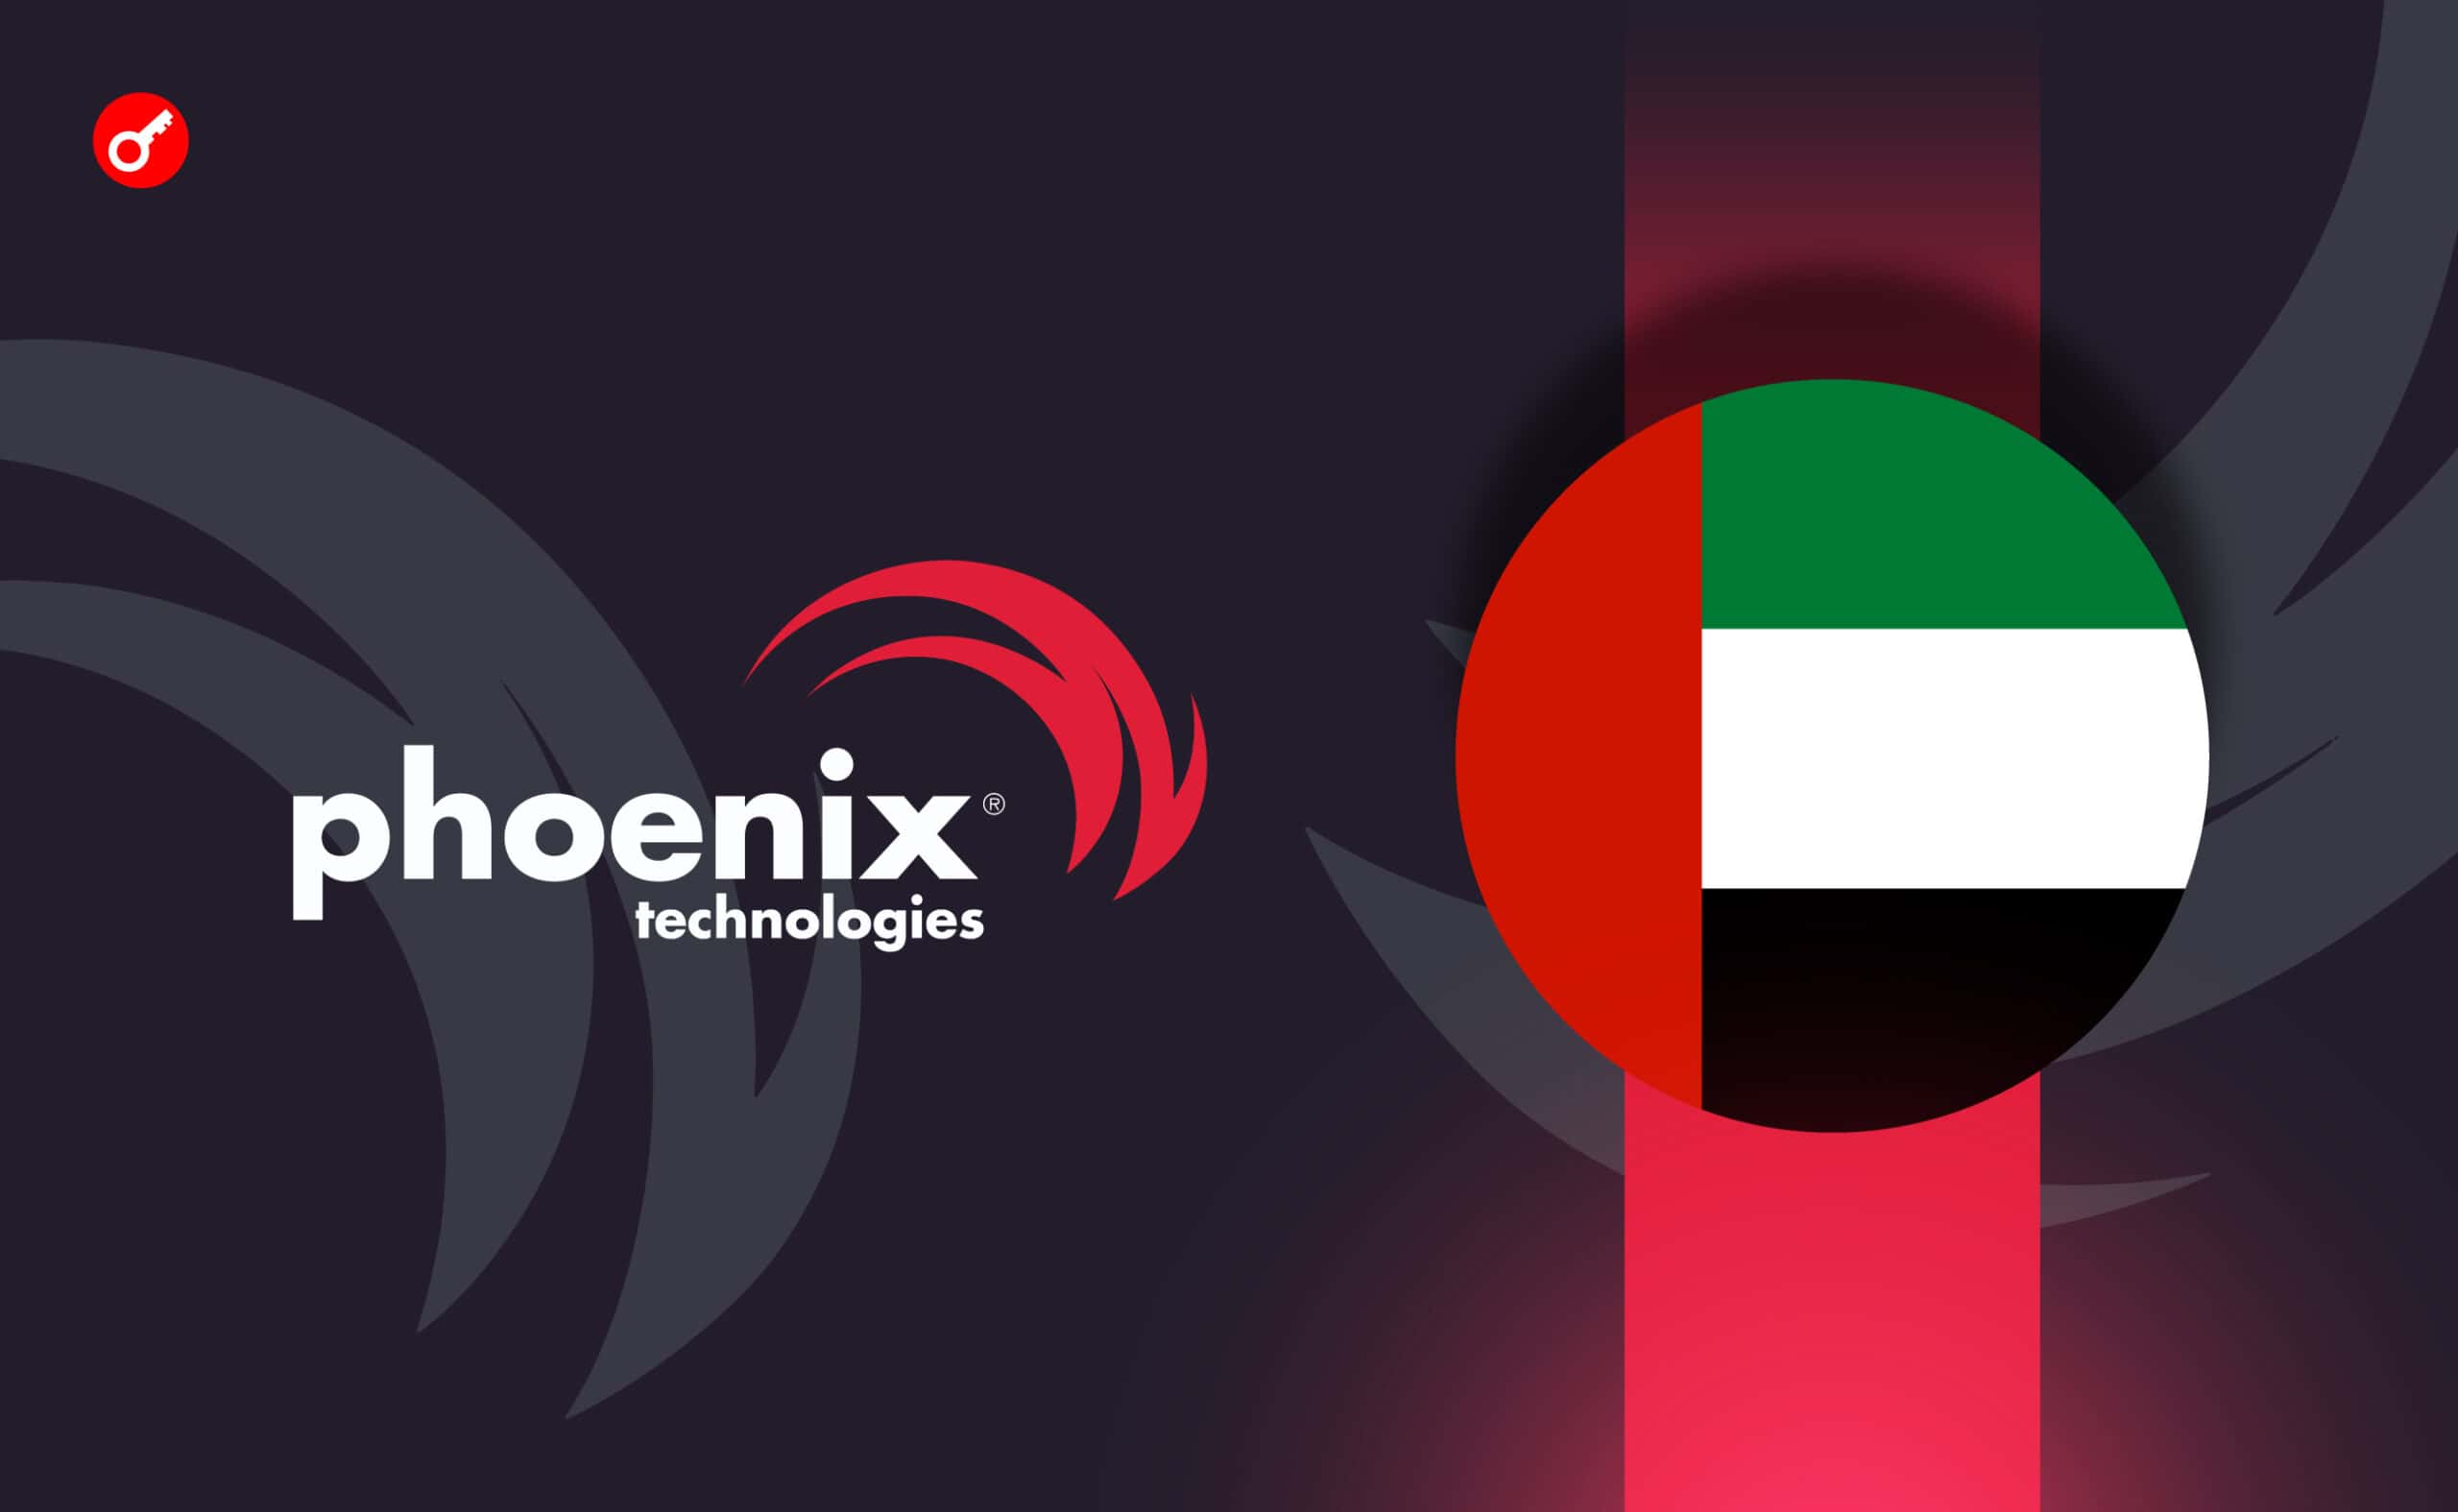 ЗМІ дізналися про плани Phoenix Technology провести IPO в ОАЕ. Головний колаж новини.